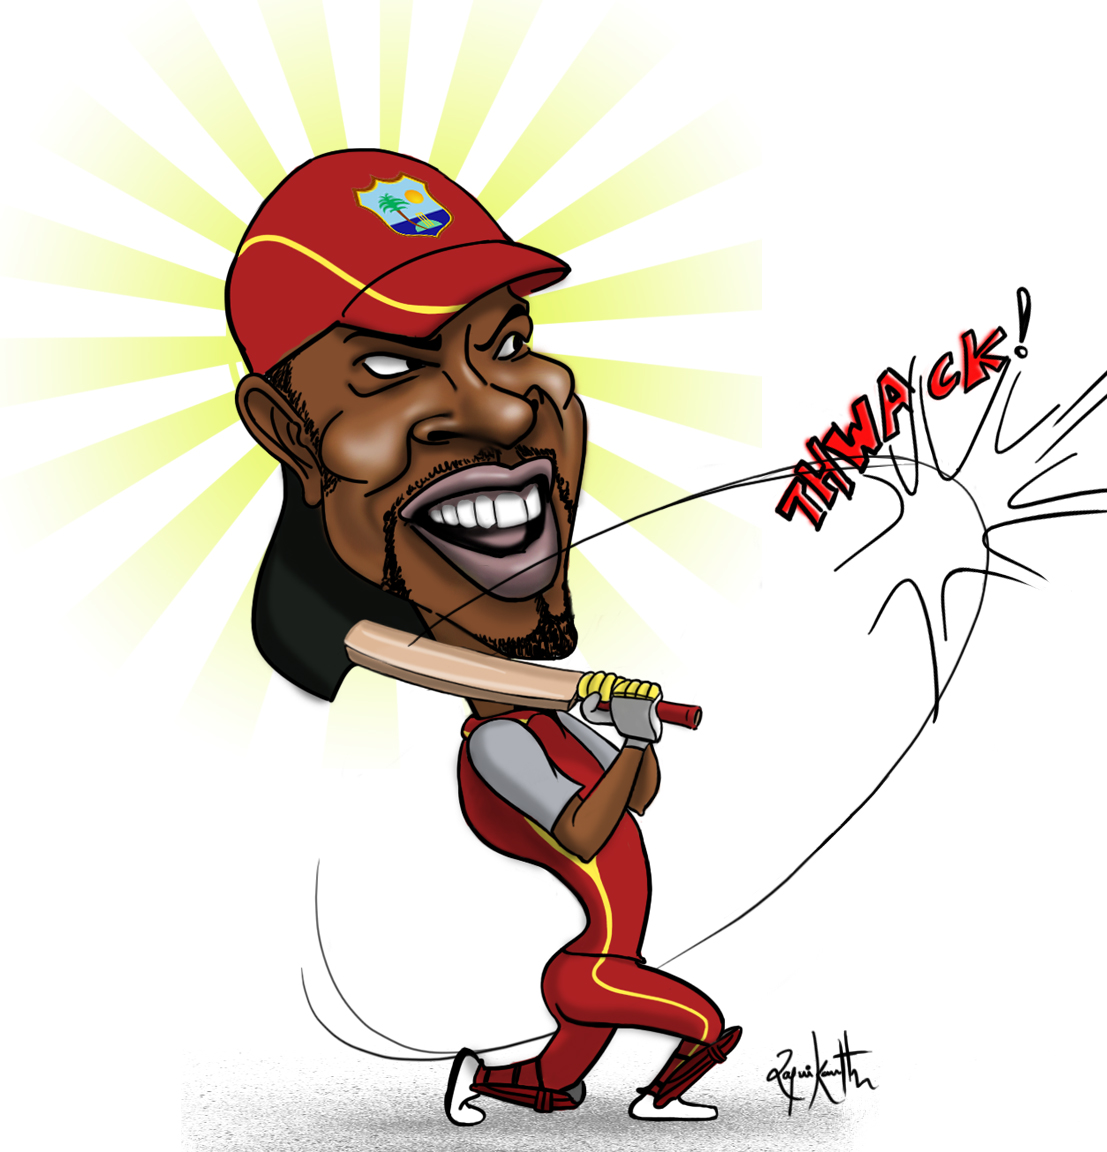 Chris Gayle_West_Indies_cricket